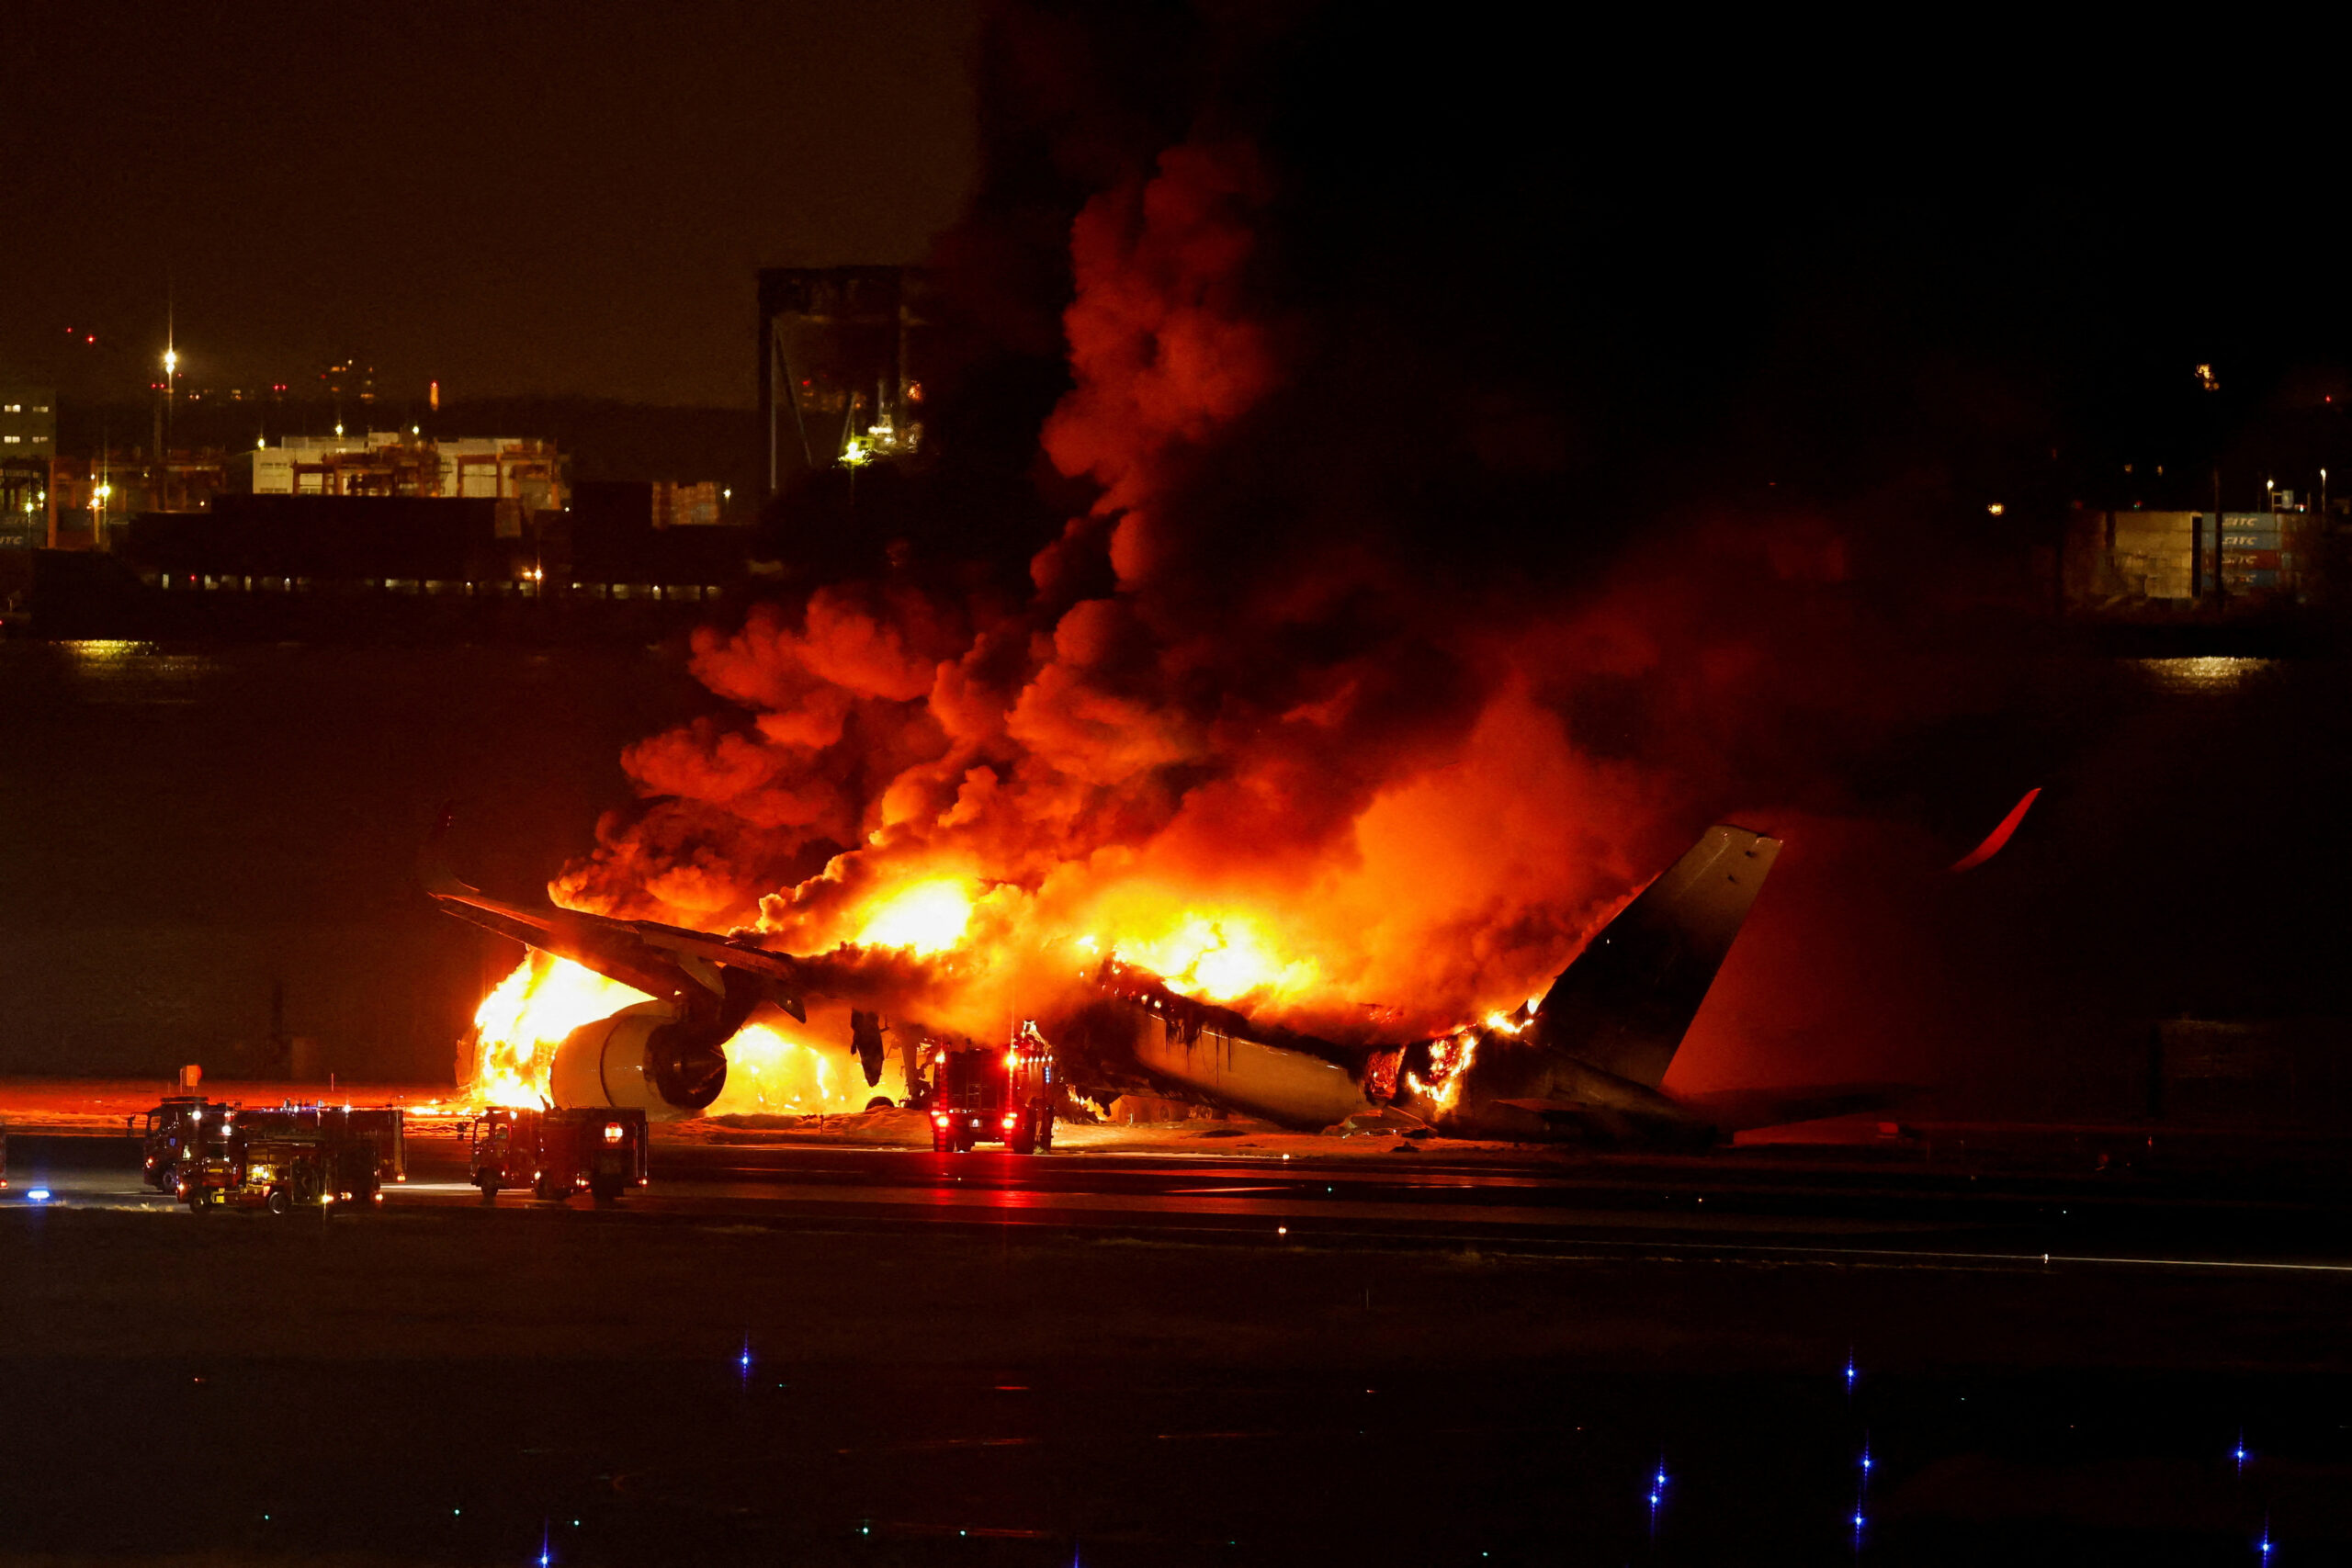 【航空】羽田事故での大火災、炭素繊維複合材の安全検証する初の機会に